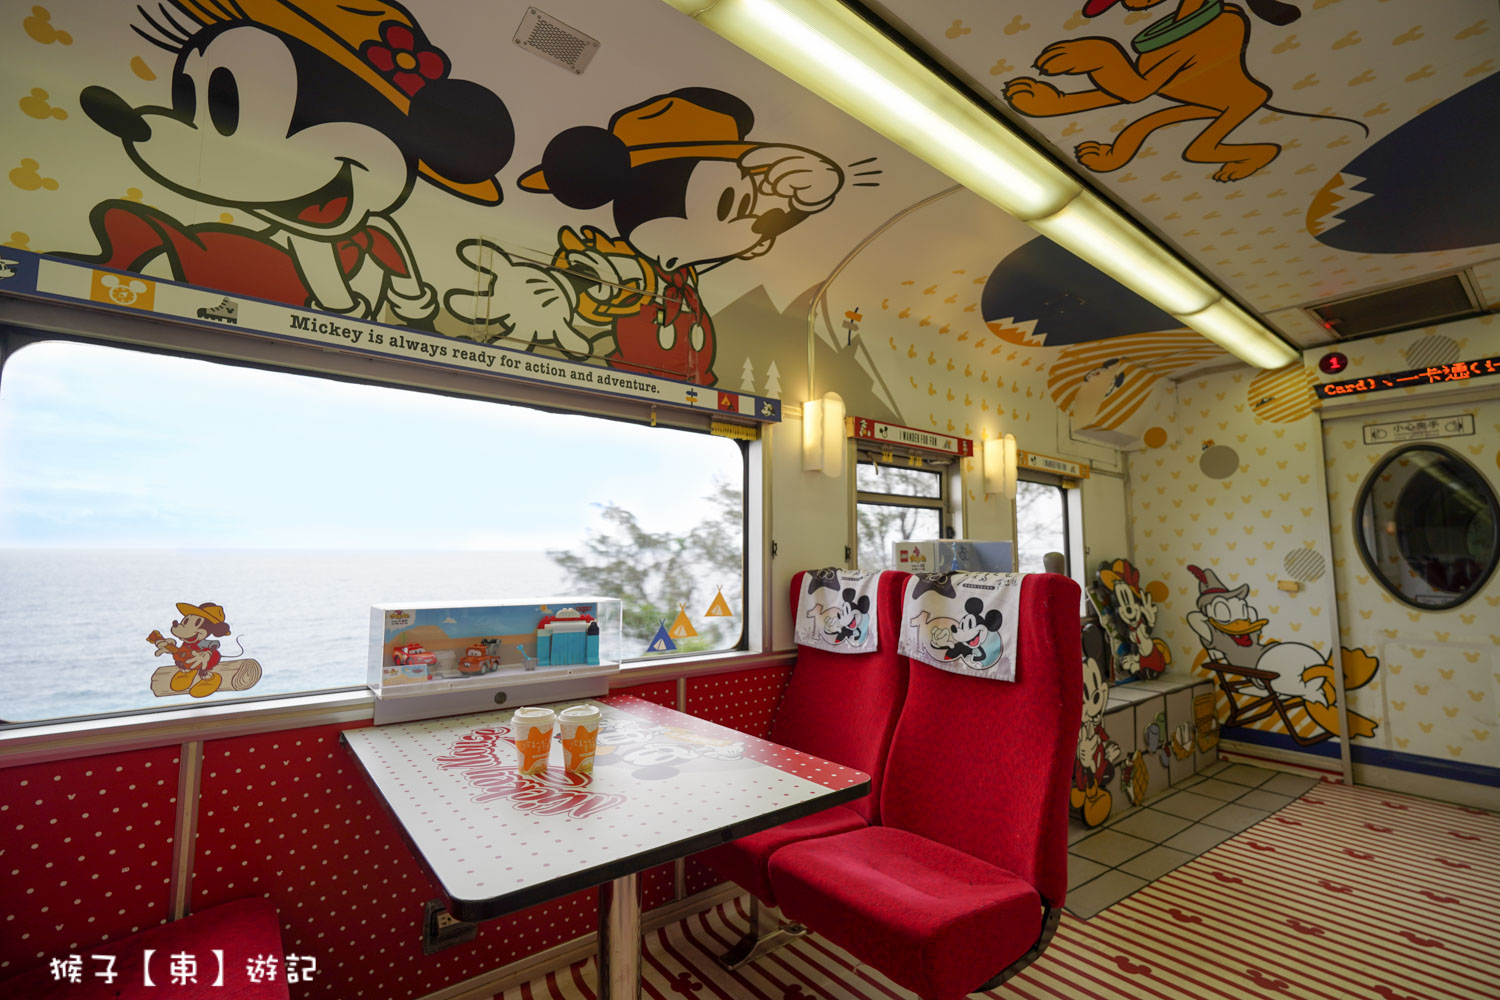 延伸閱讀：迪士尼主題觀光列車 環島之星夢想號 在火車上唱KTV 免費DIY 飲料暢飲 點心 便當都包在車票 鐵路漫遊